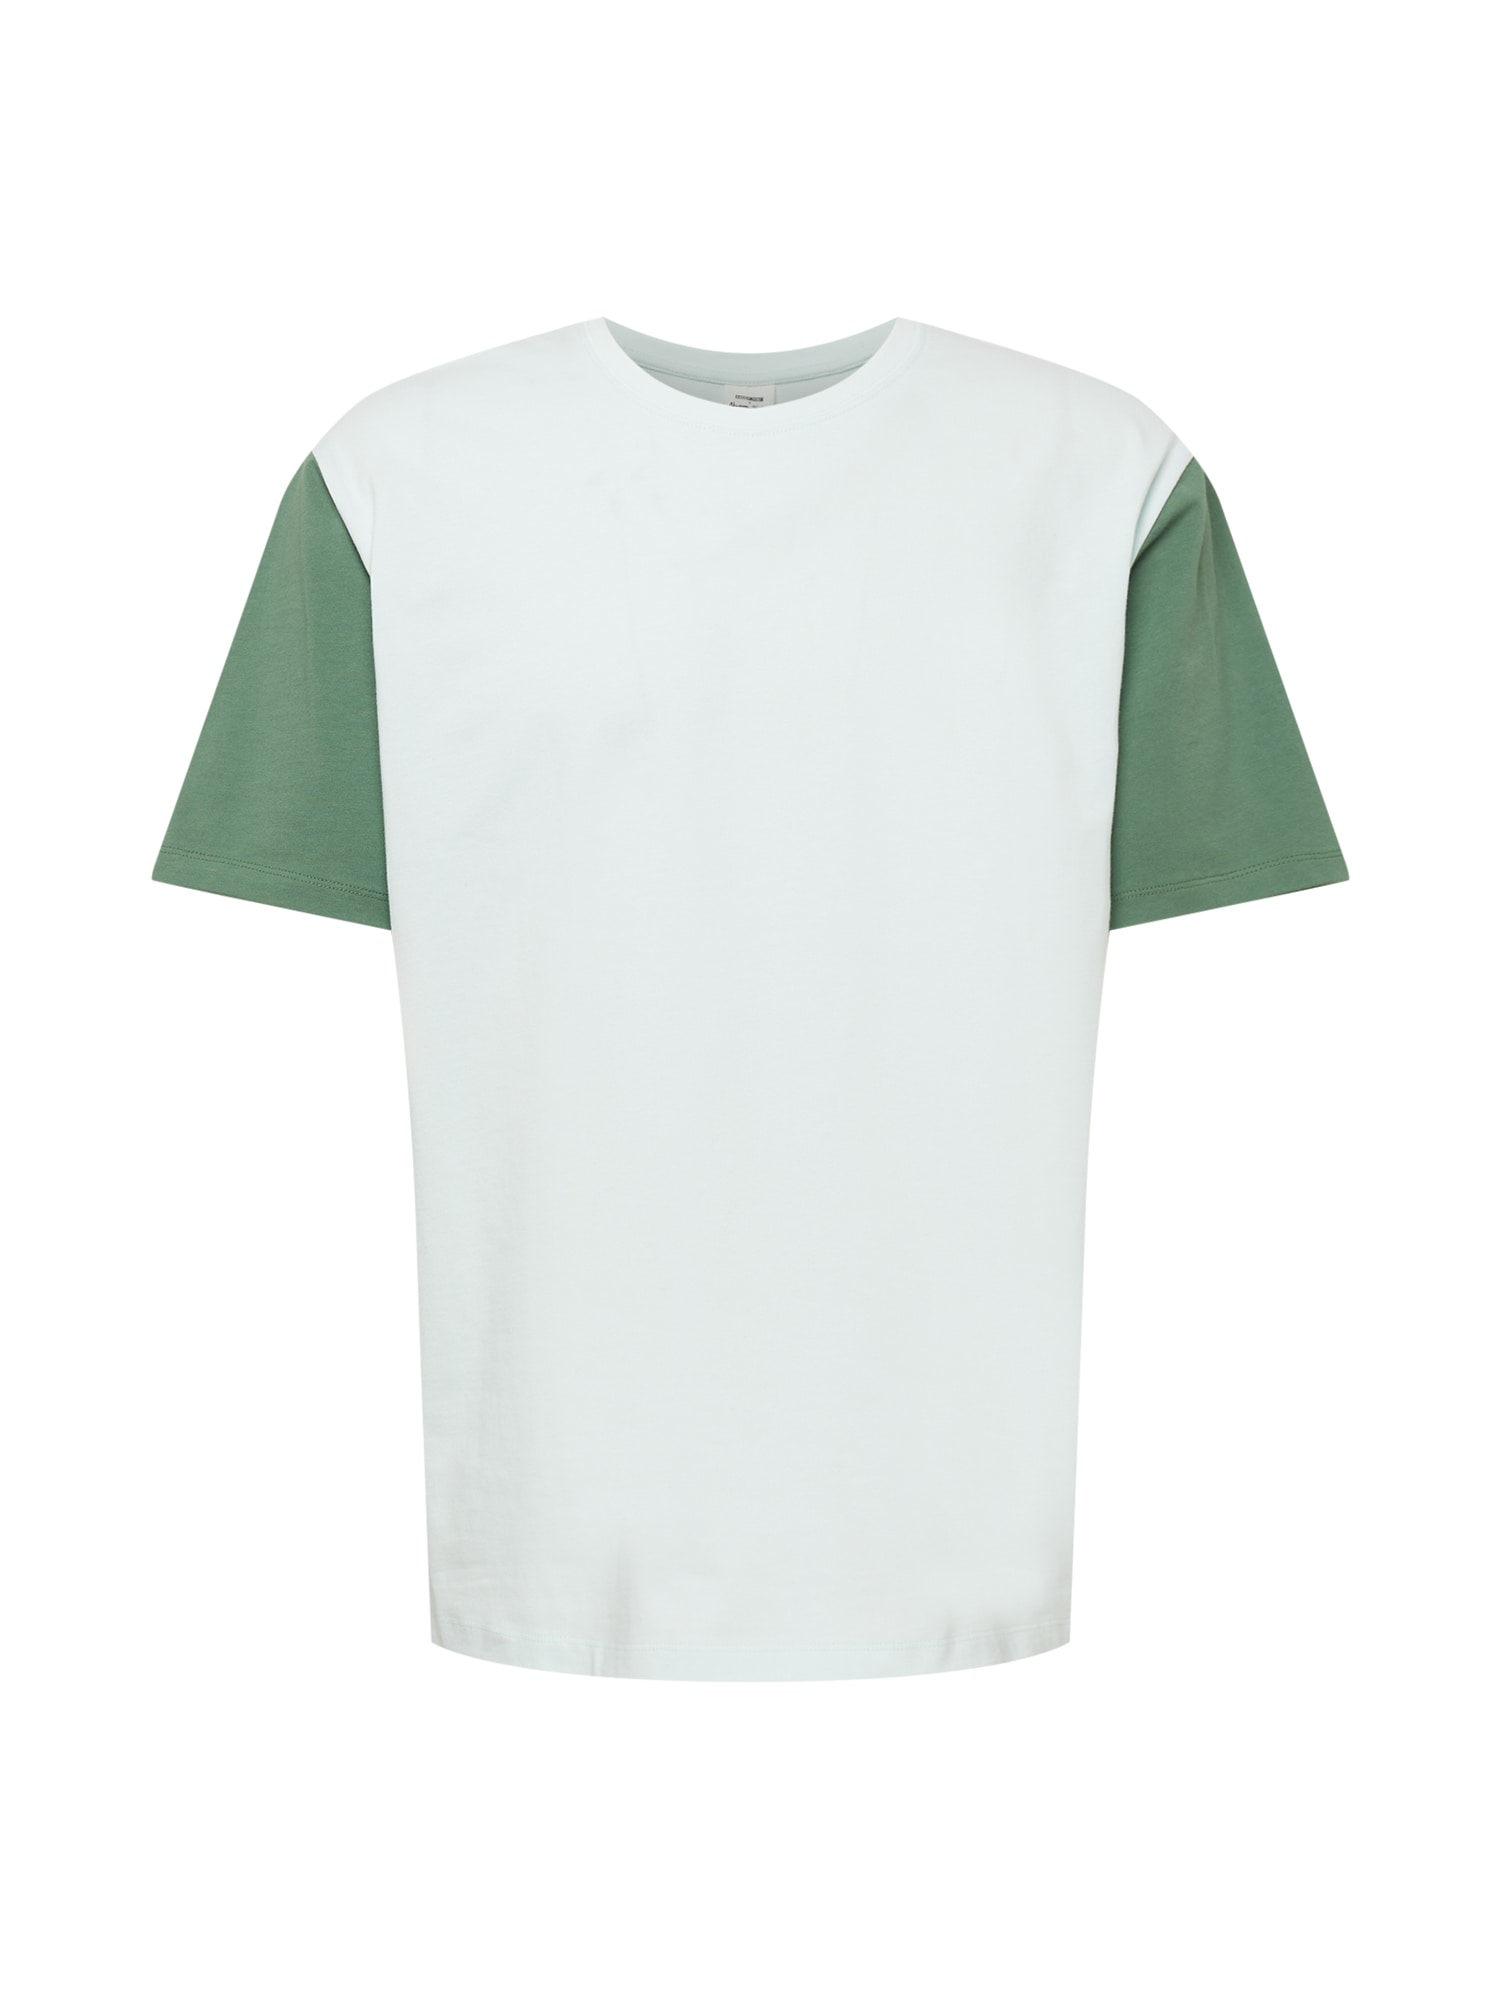 ABOUT YOU x Alvaro Soler Marškinėliai 'Ramon' žalia / šviesiai žalia / mišrios spalvos